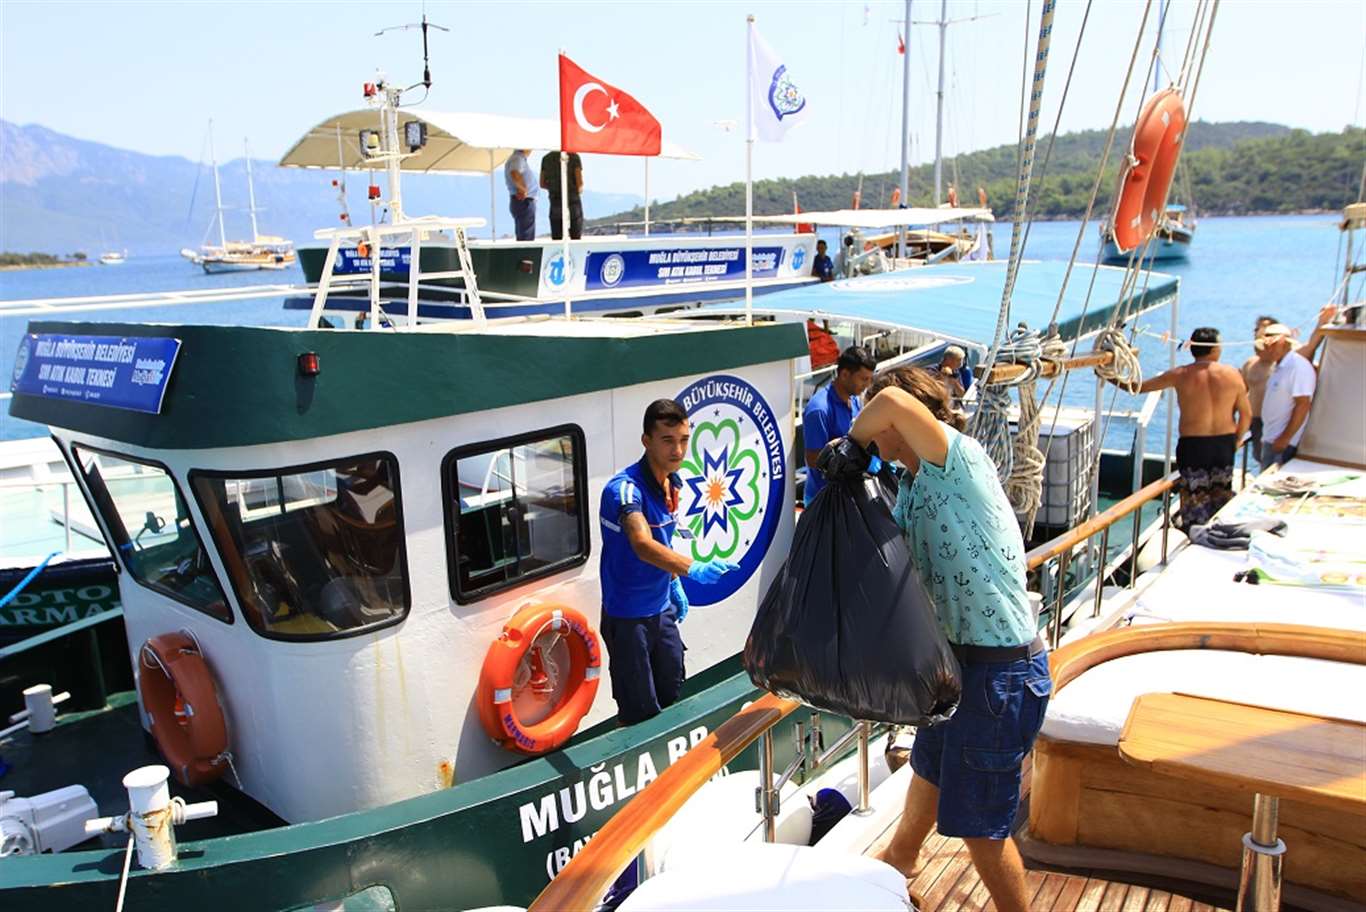 Büyükşehir teknelerle bayramda 12 bin 255 kilo katı atık topladı haberi